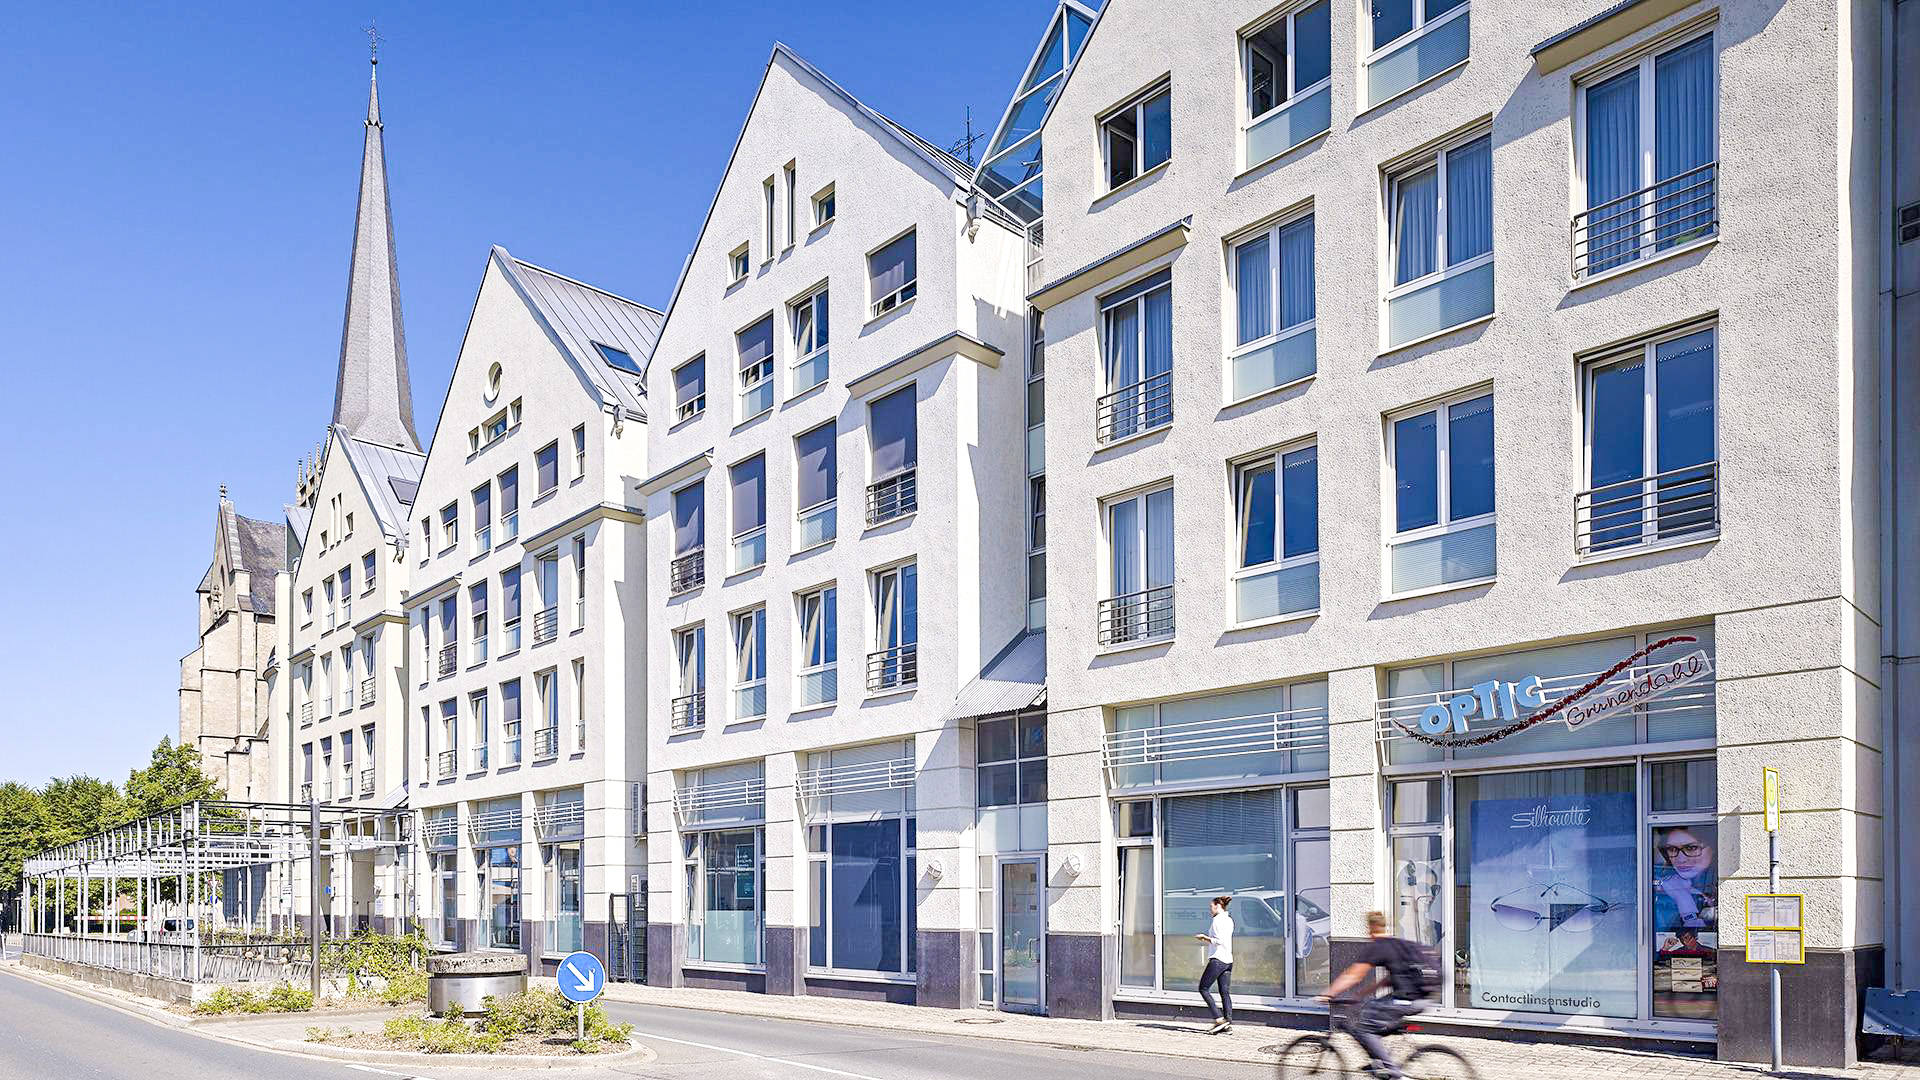 Fassadensanierung TrappzeileGroßer Markt46483 Wesel